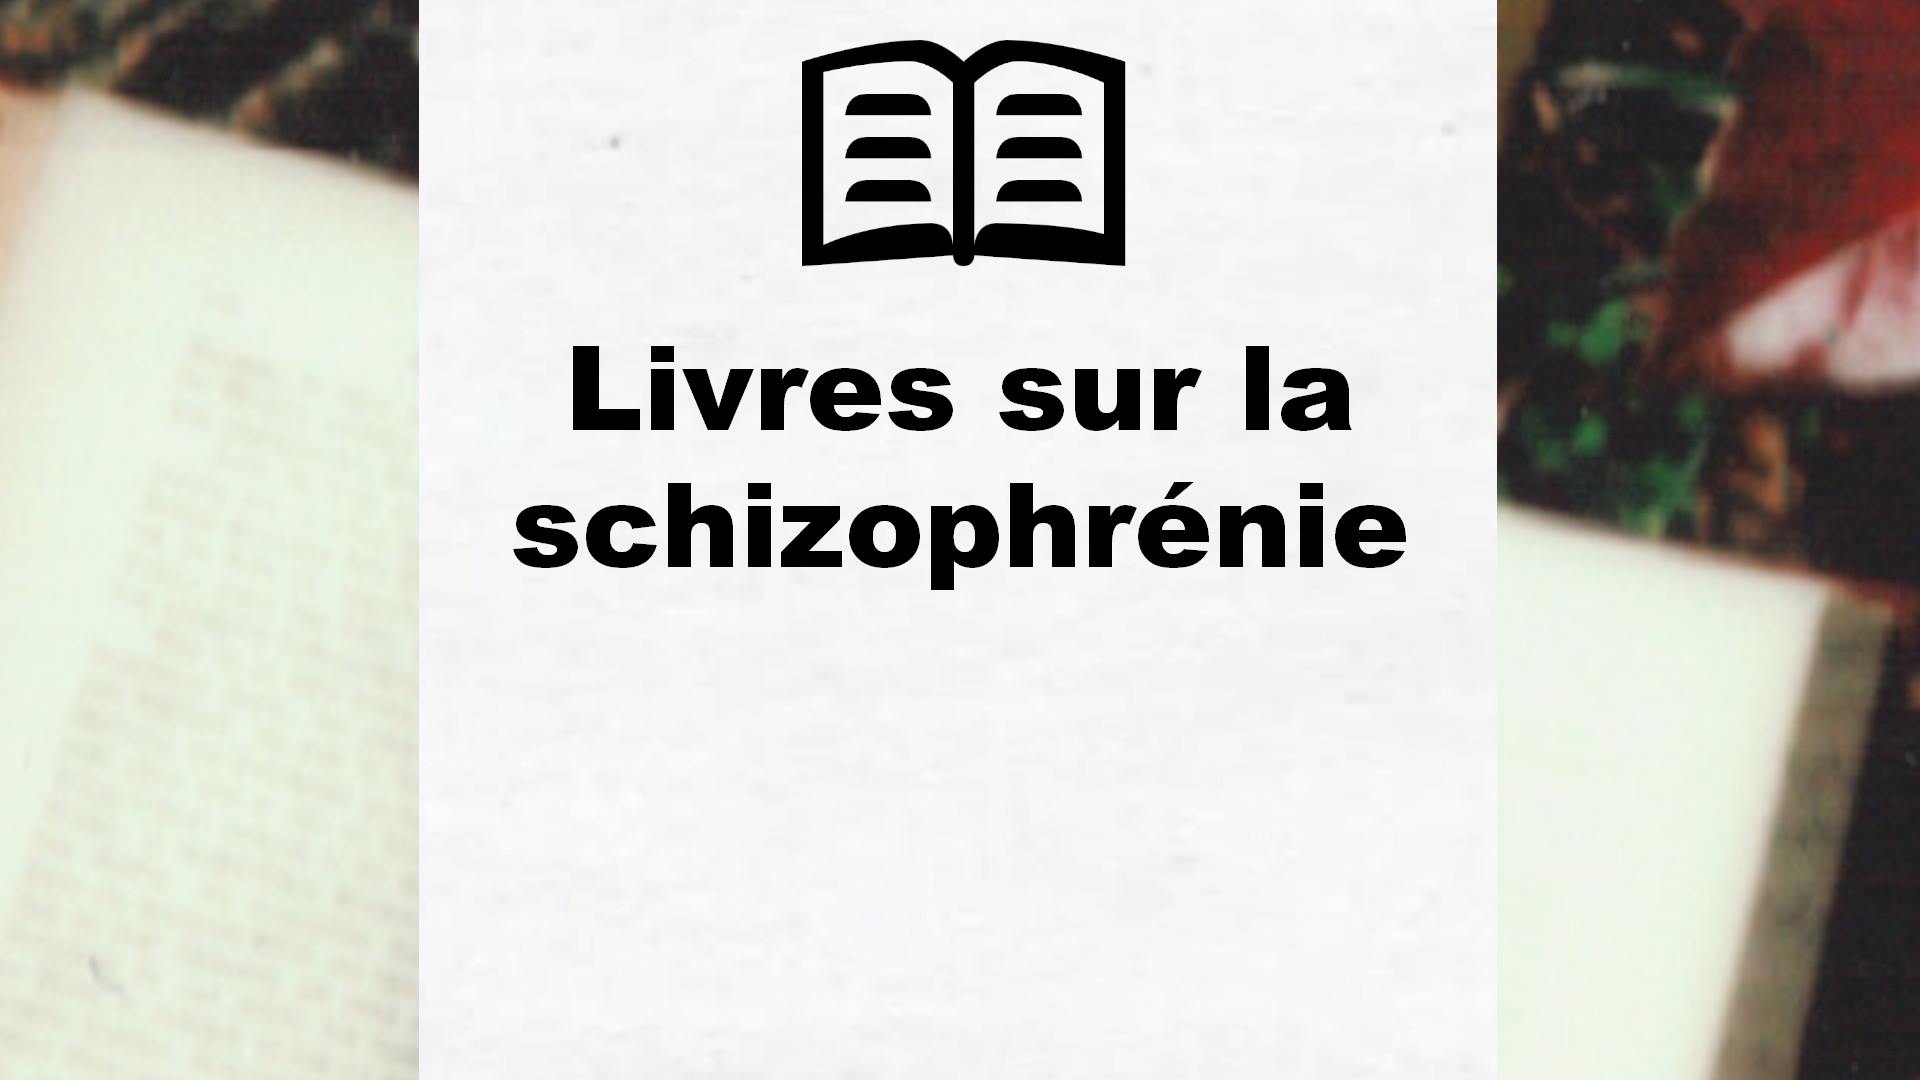 Livres sur la schizophrénie